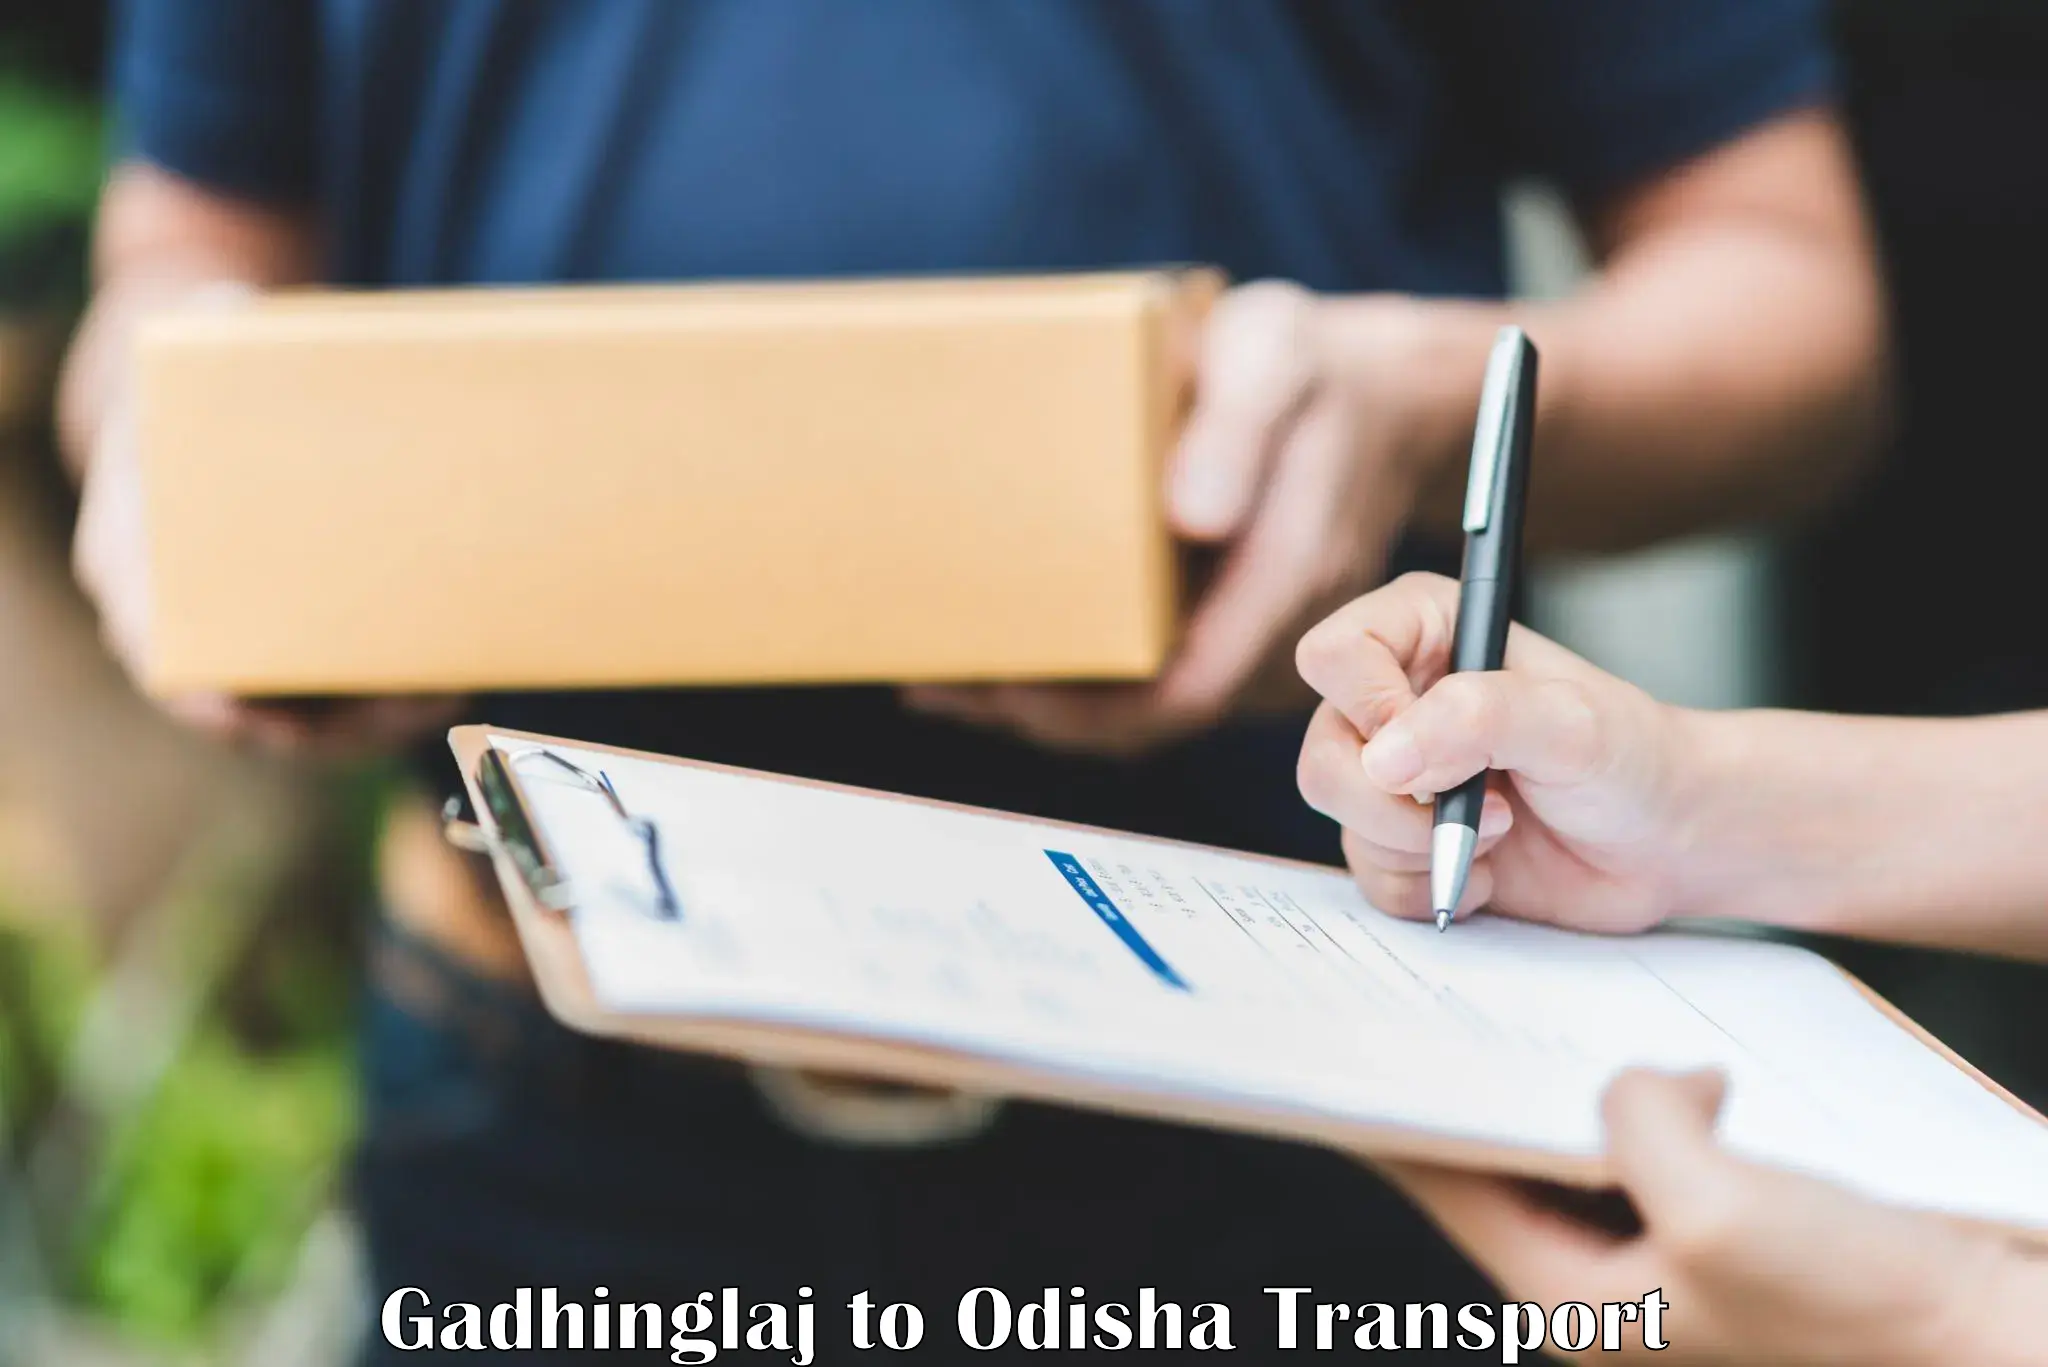 Road transport online services Gadhinglaj to Bhubaneswar